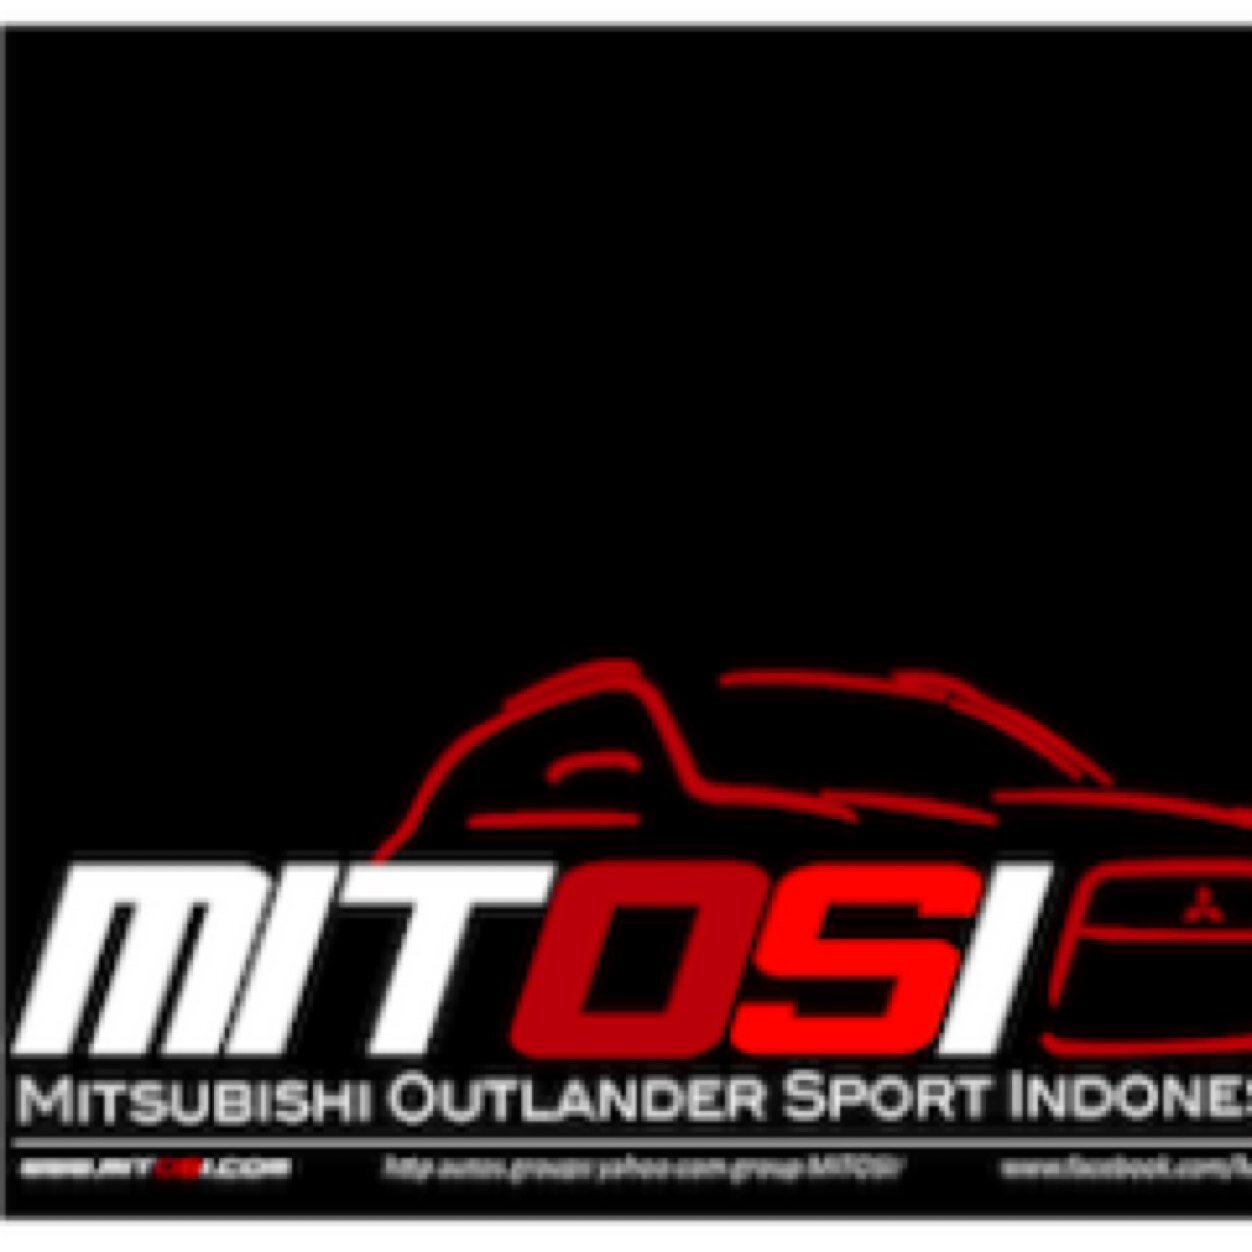 We are MITOSI ( Mitsubishi Outlander Sport Indonesia ) Borneo Chapter